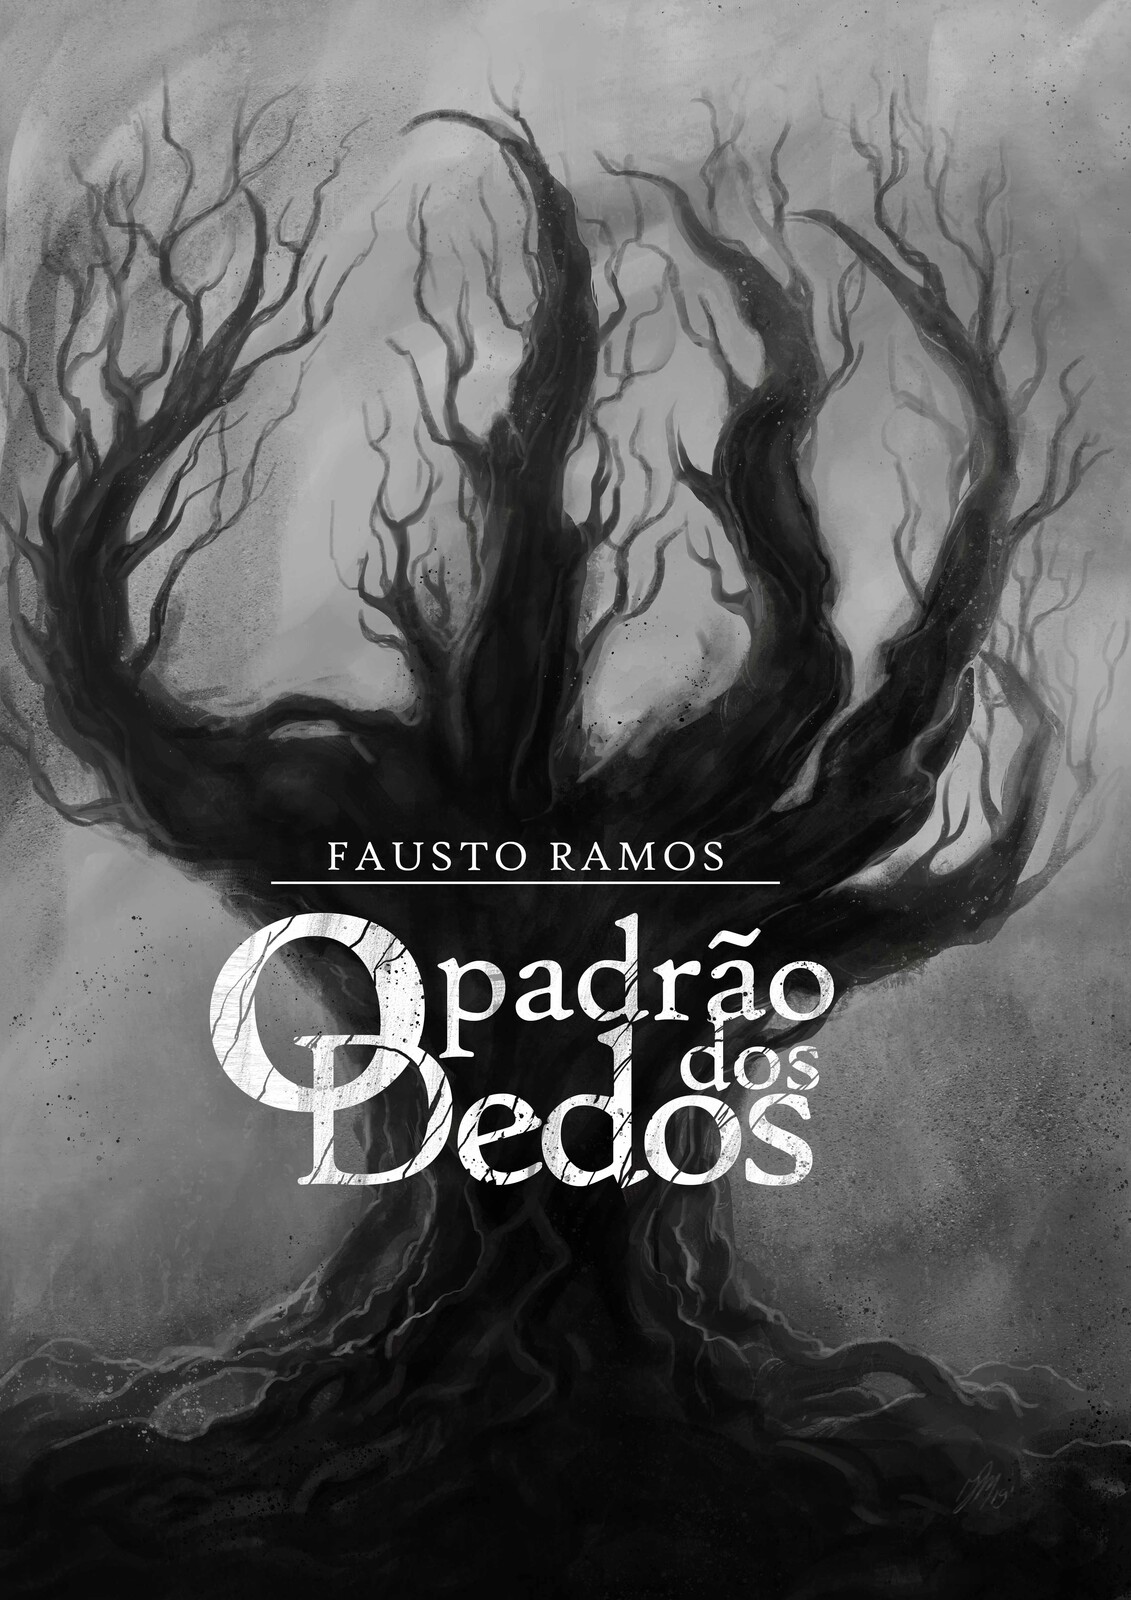 front cover for Fausto Ramos book "O Padrão dos Dedos"